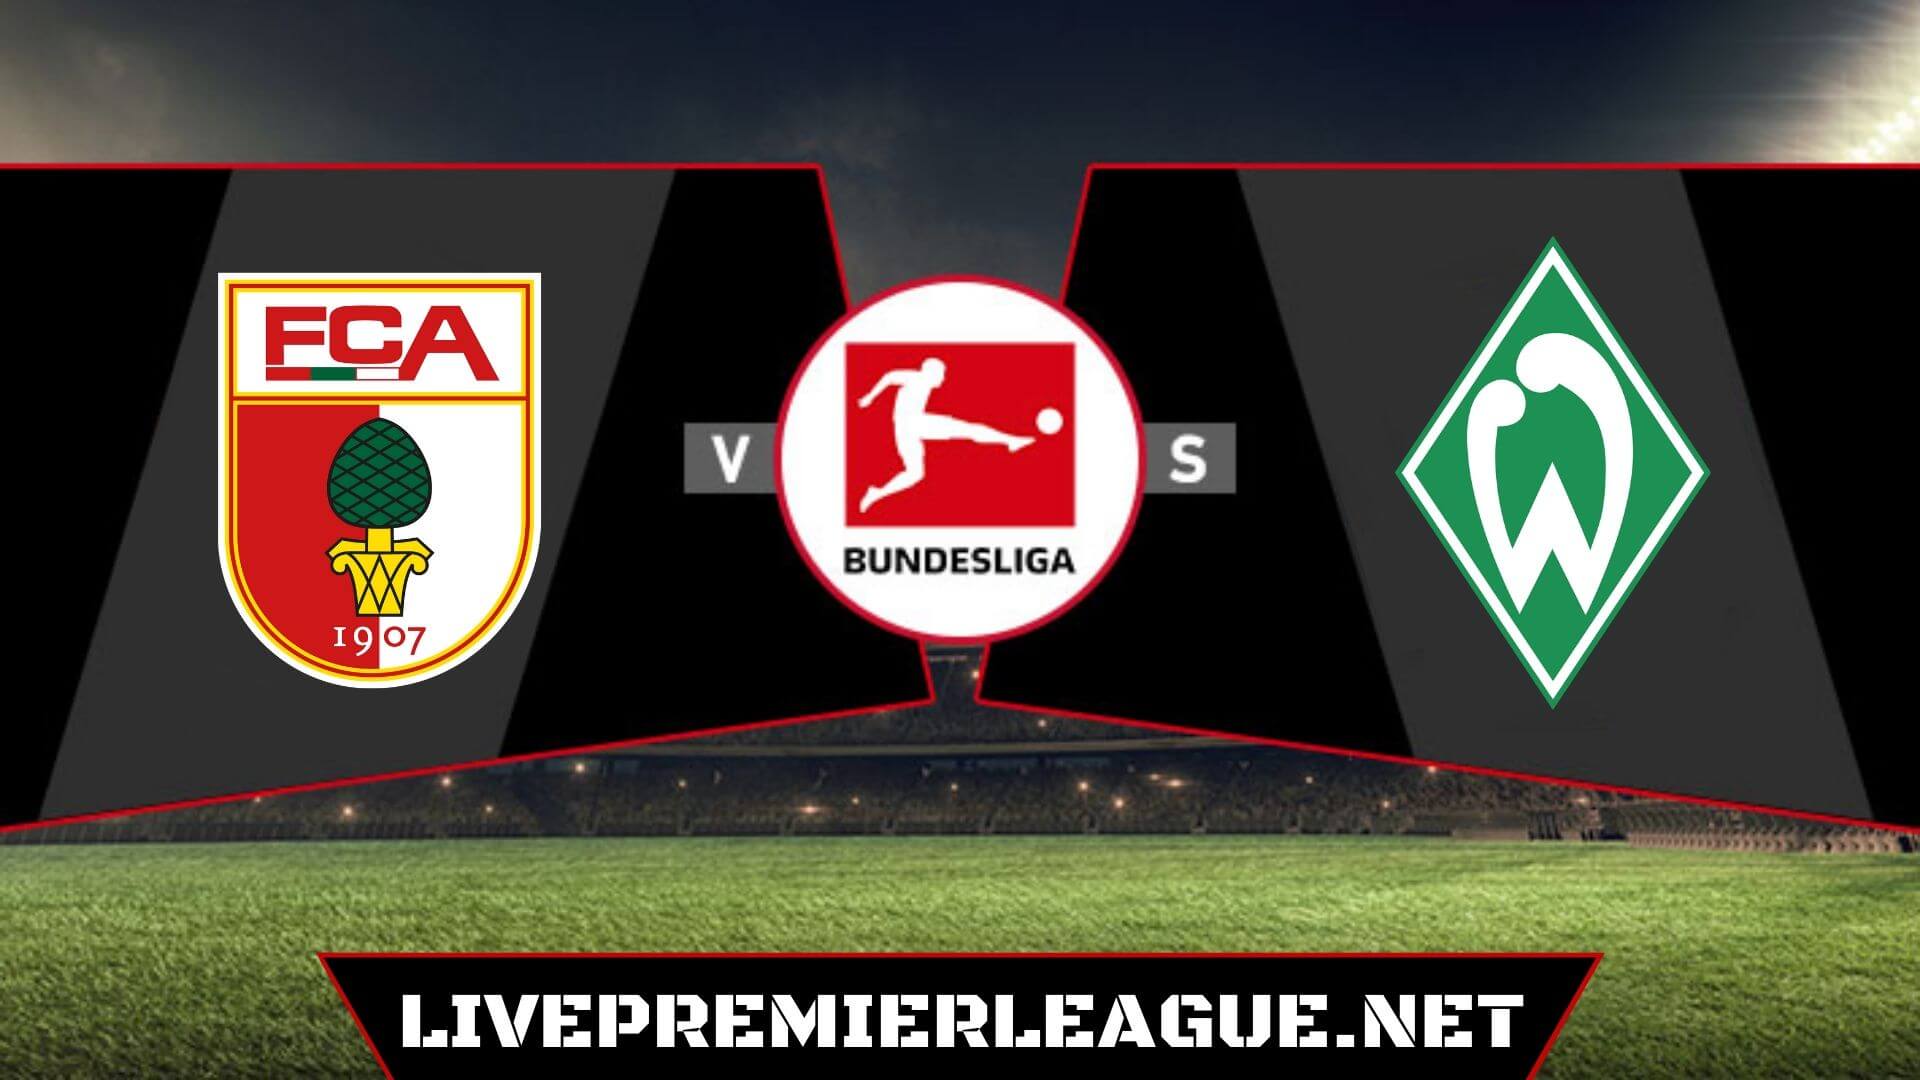 FC Augsburg VS SV Werder Bremen Live Stream | Match 20